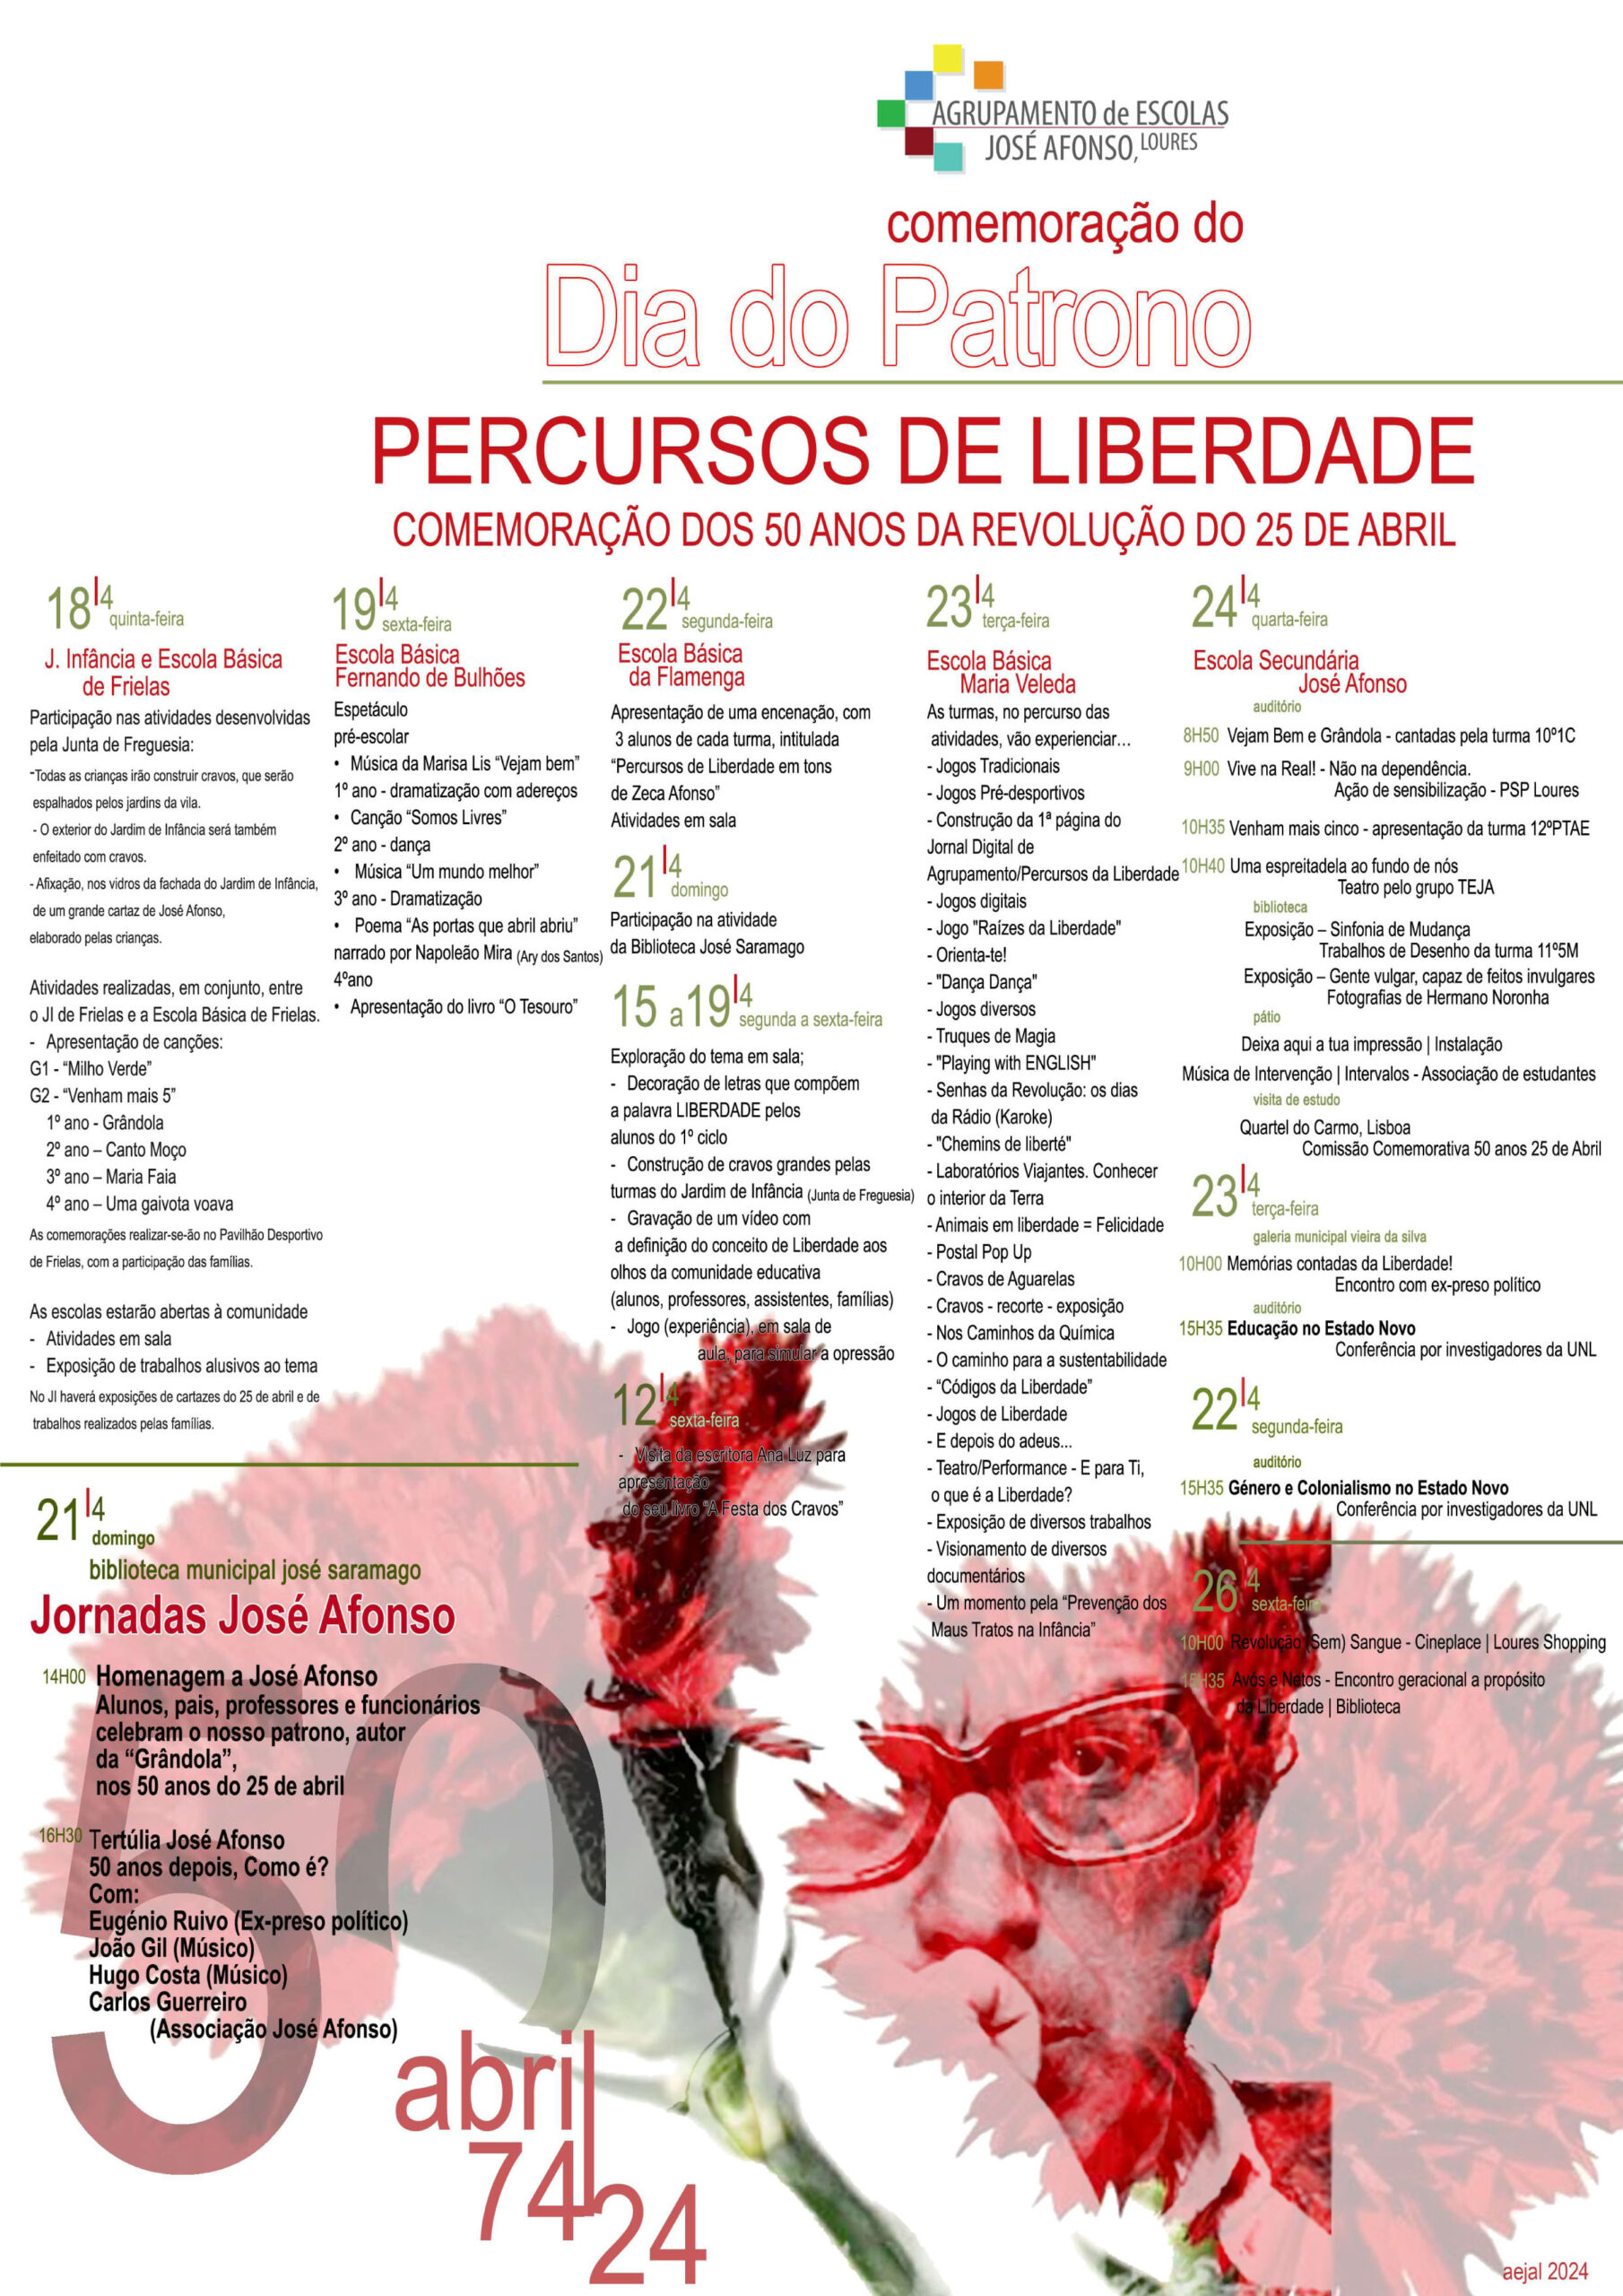 Capa Oficial do Evento Percursos de Liberdade - Dia  do Patrono - Comemoração dos 50 anos do 25 abril